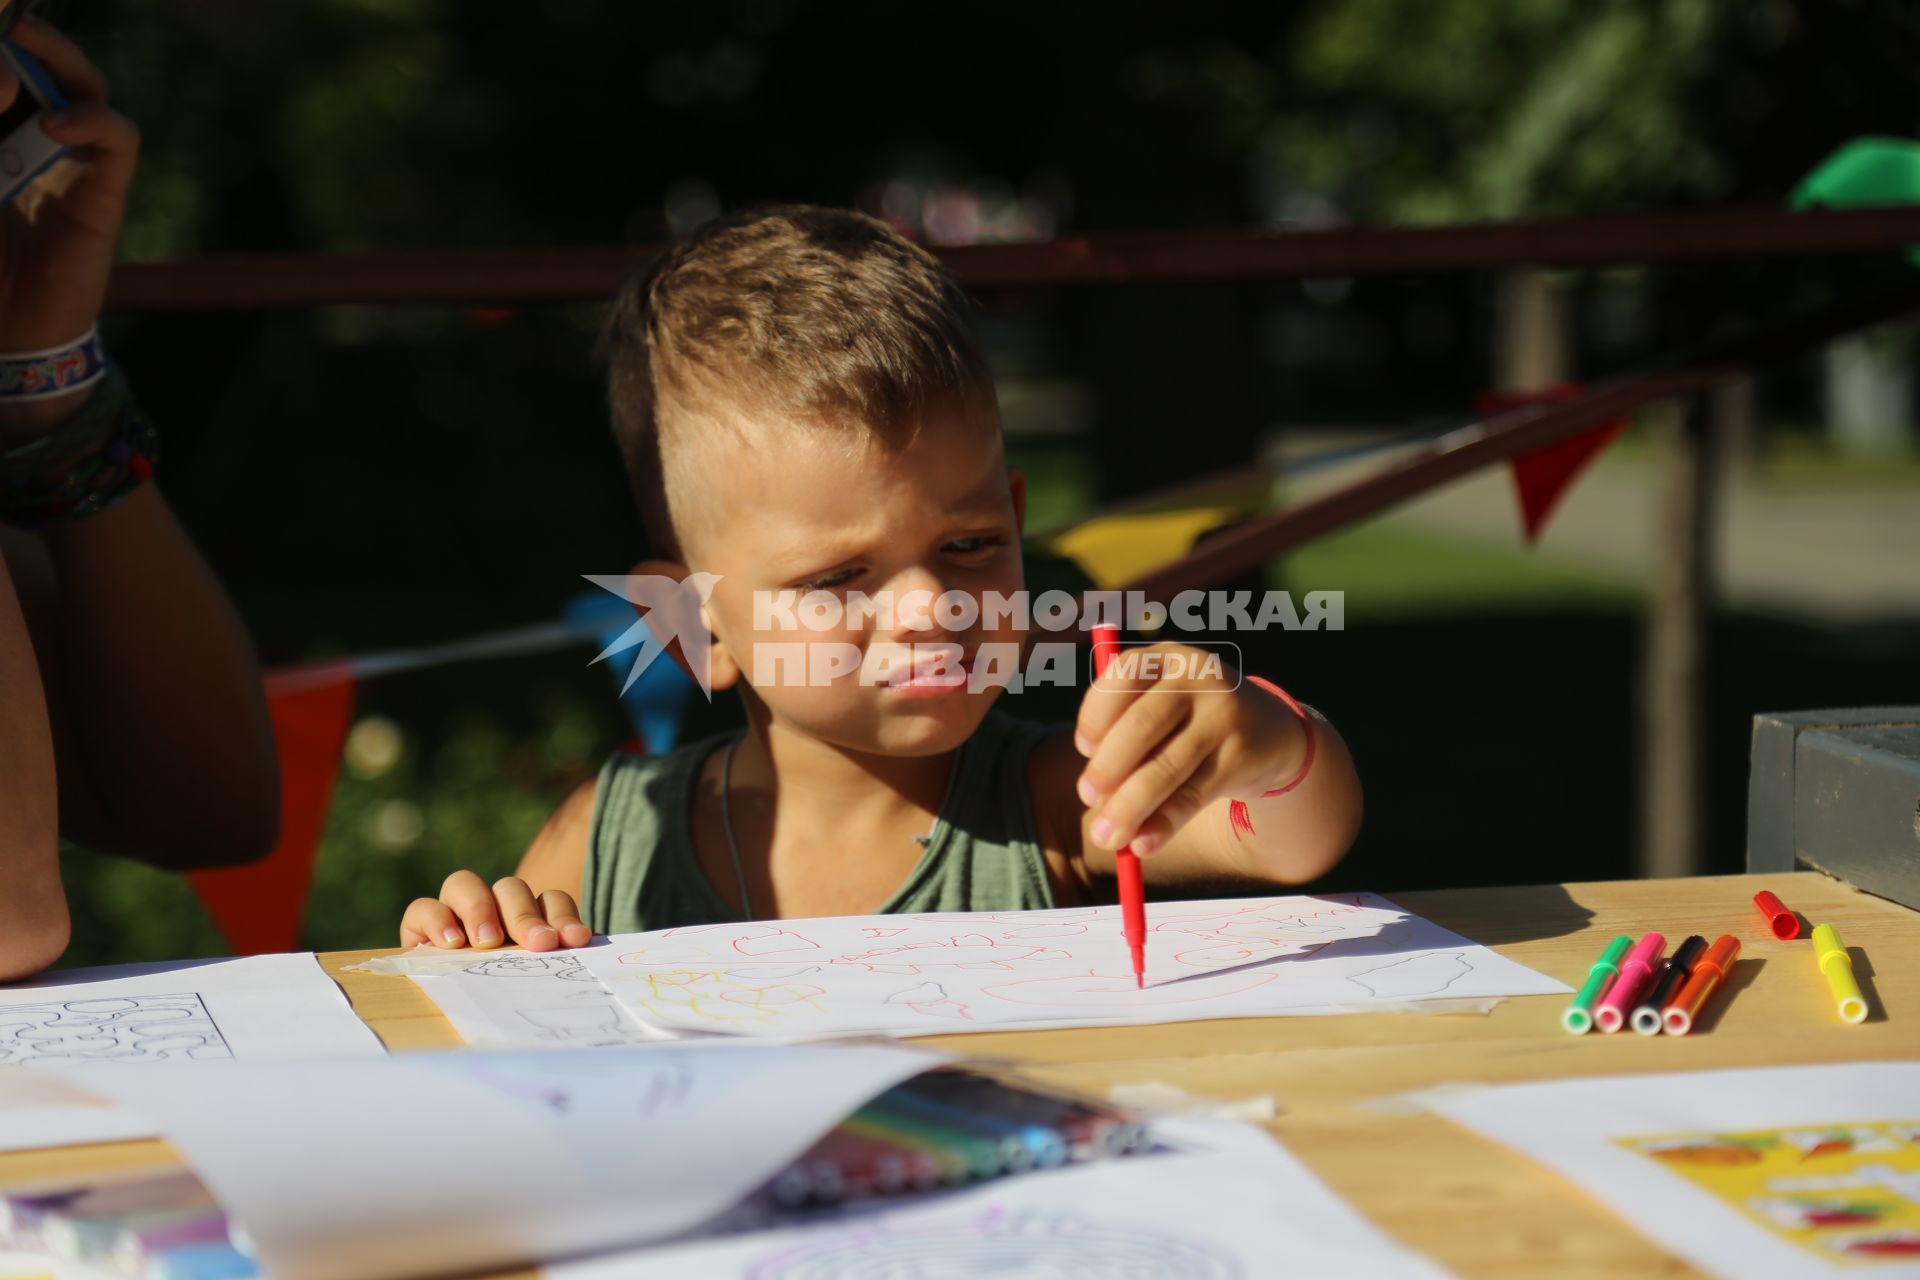 Диск350. Сад ЭРМИТАЖ. Фестиваль ГАЛАФЕСТ - 2019. На снимке: мальчик рисует фломастерами